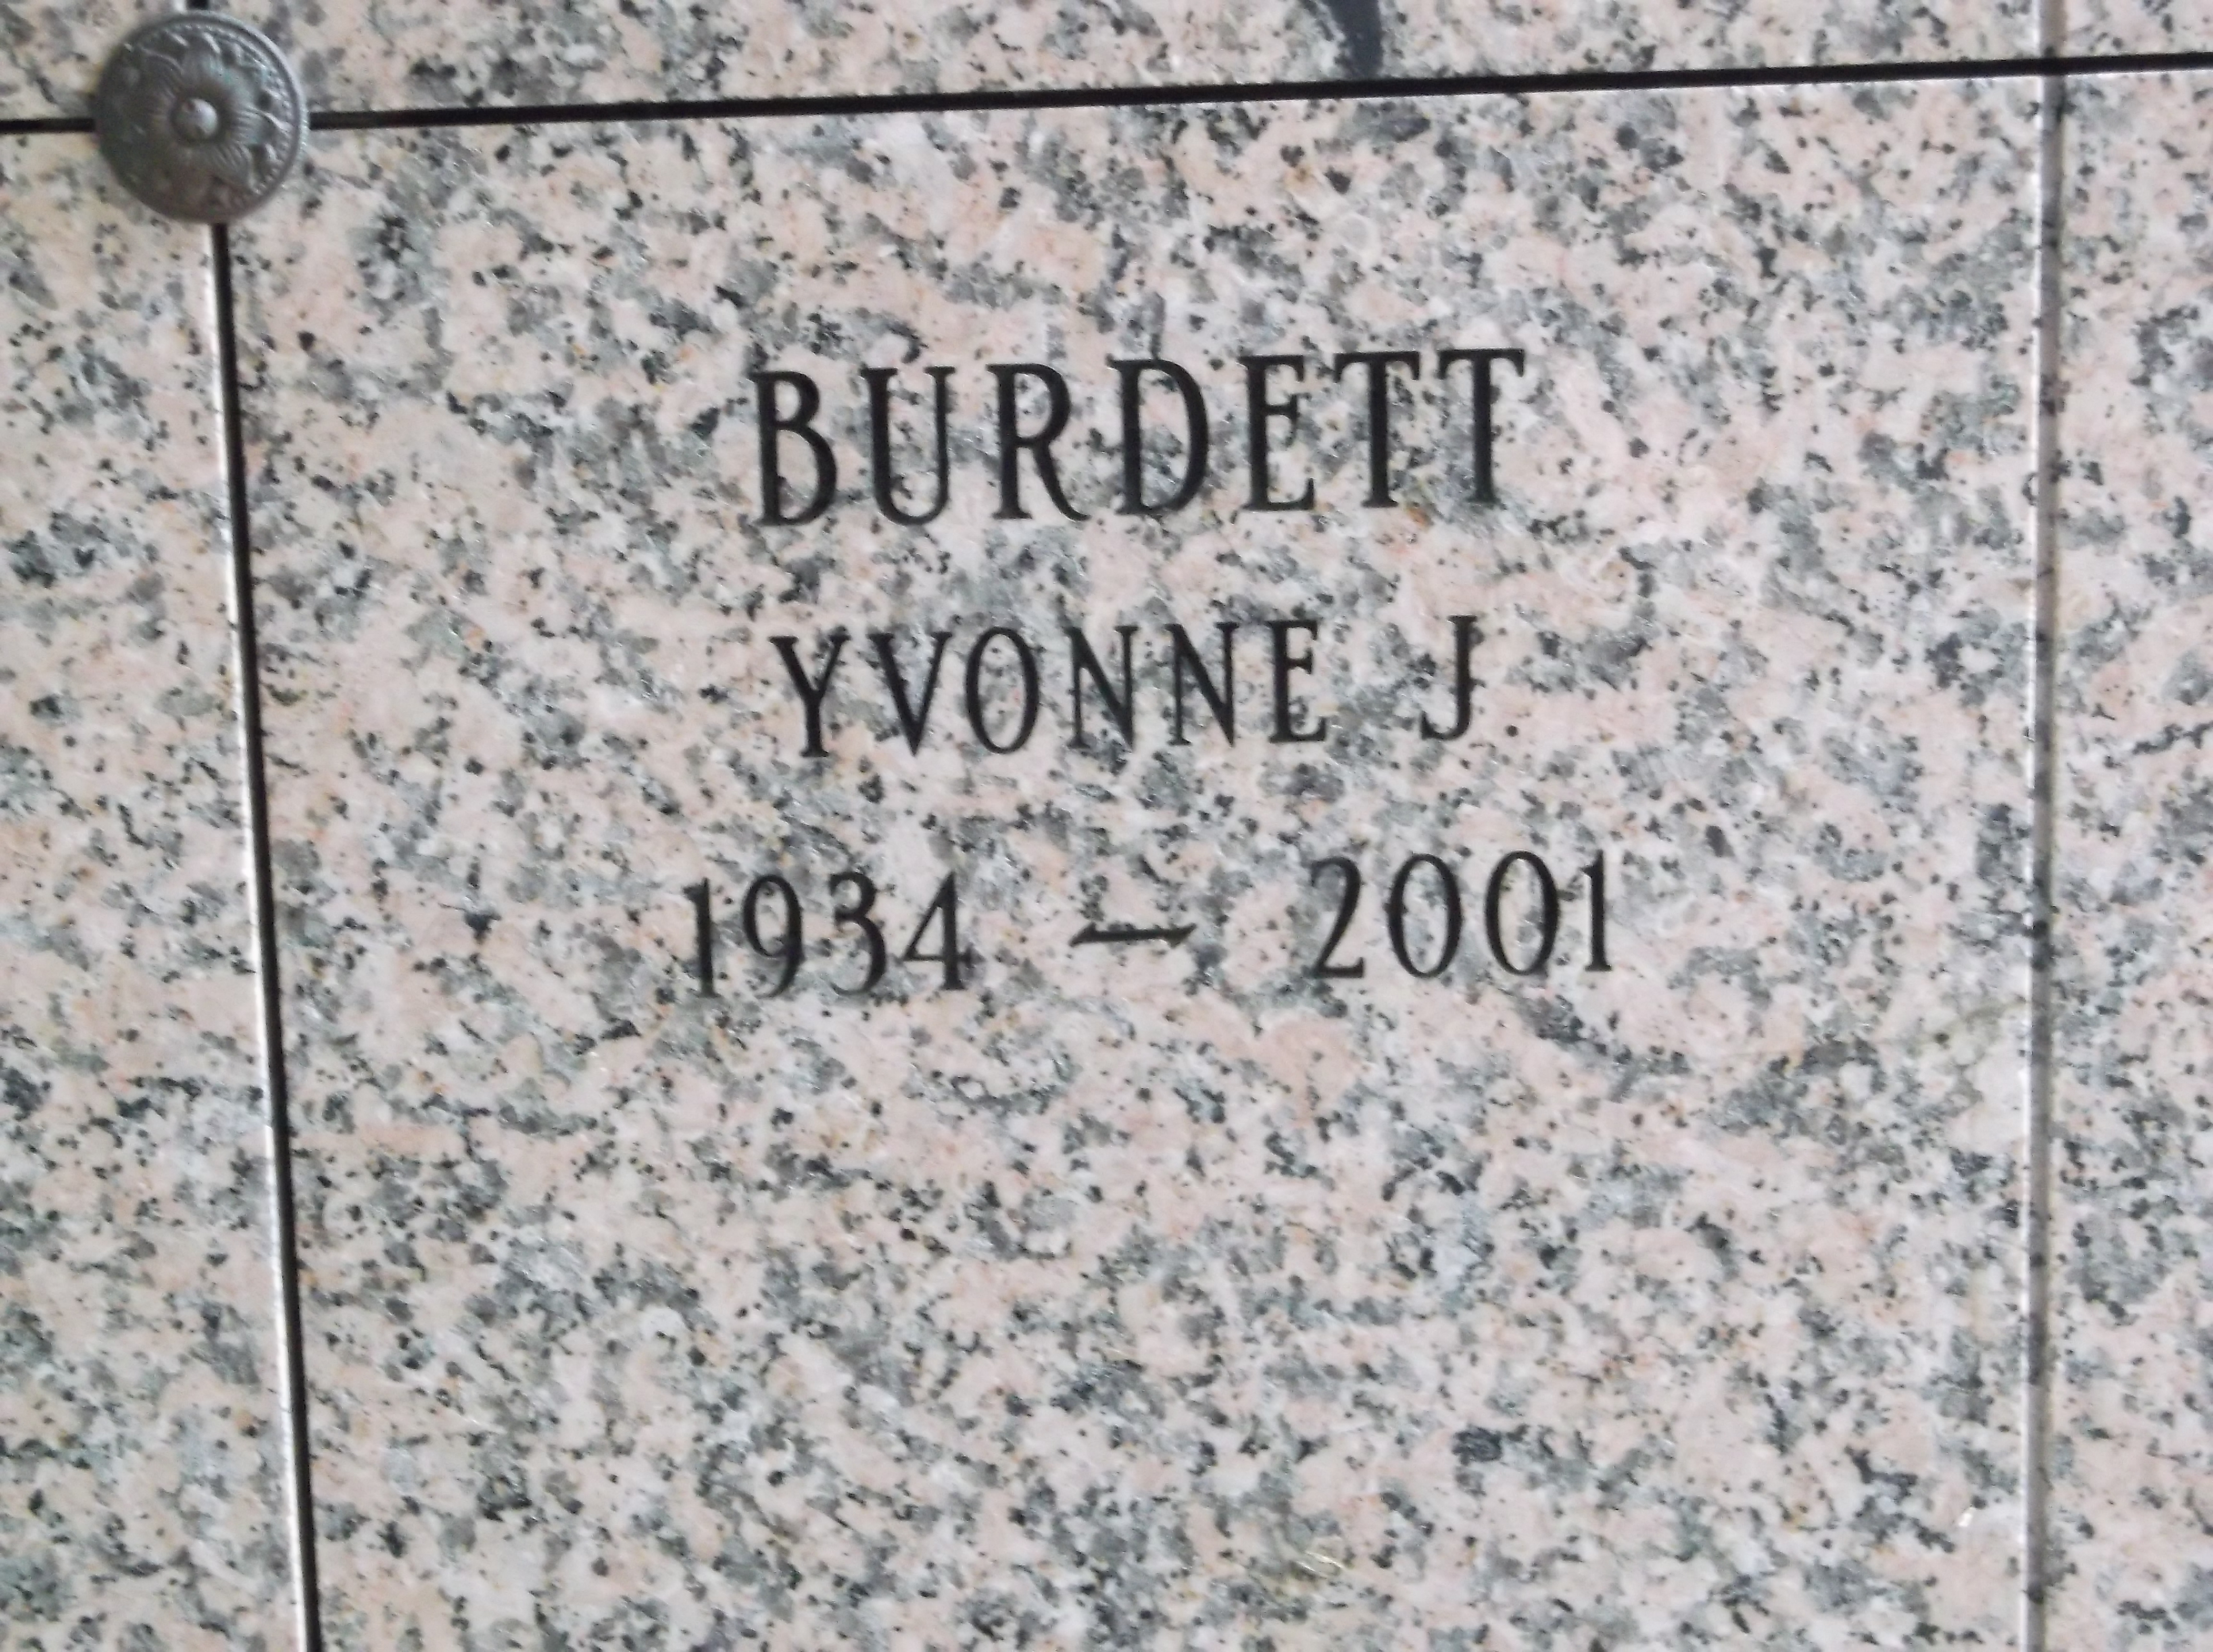 Yvonne J Burdett